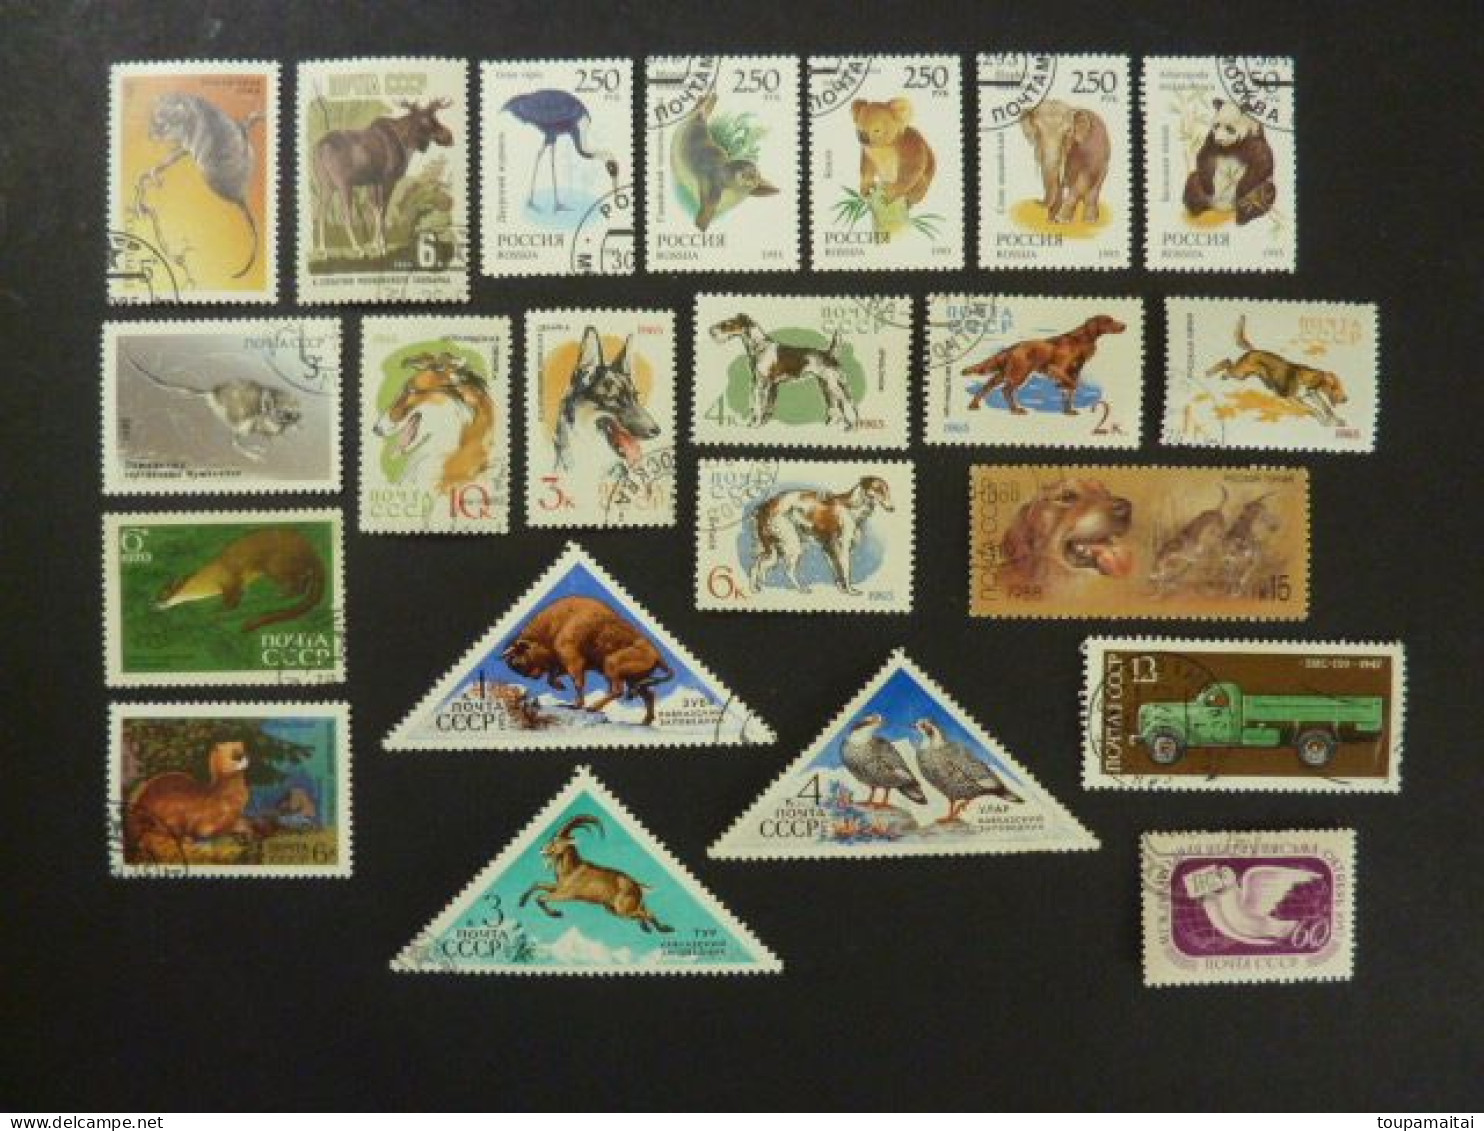 U.R.S.S. LOT de 333 timbres oblitérés tous différents + 25 timbres neufs MNH** tous différents. Voir les 1 photos.